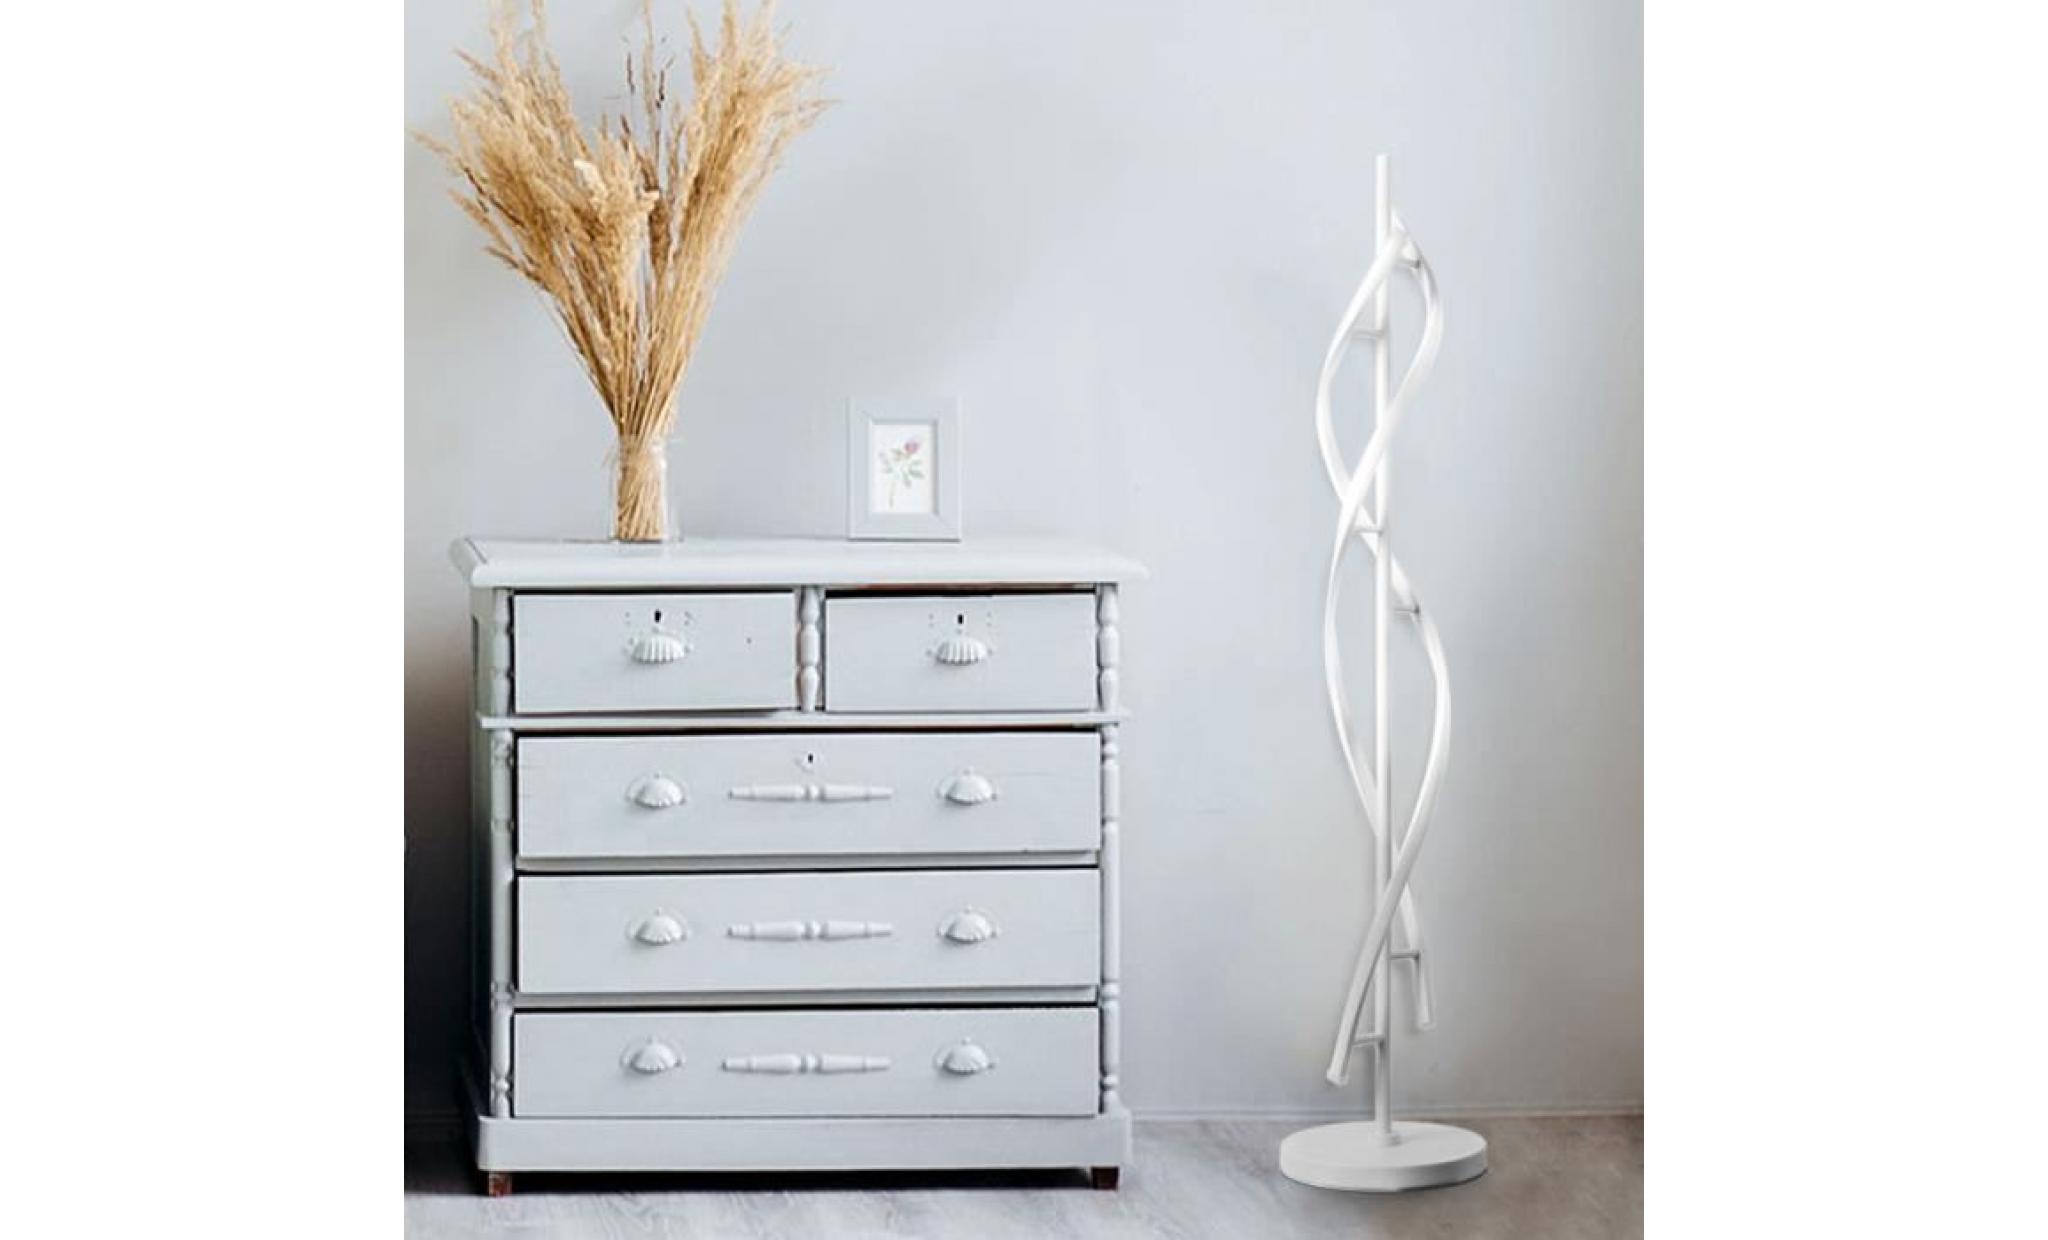 elinkume lampadaire led dimmable spirale blanche lampadaire 30w lampe réglable style moderne adapté à la décoration intérieure pas cher